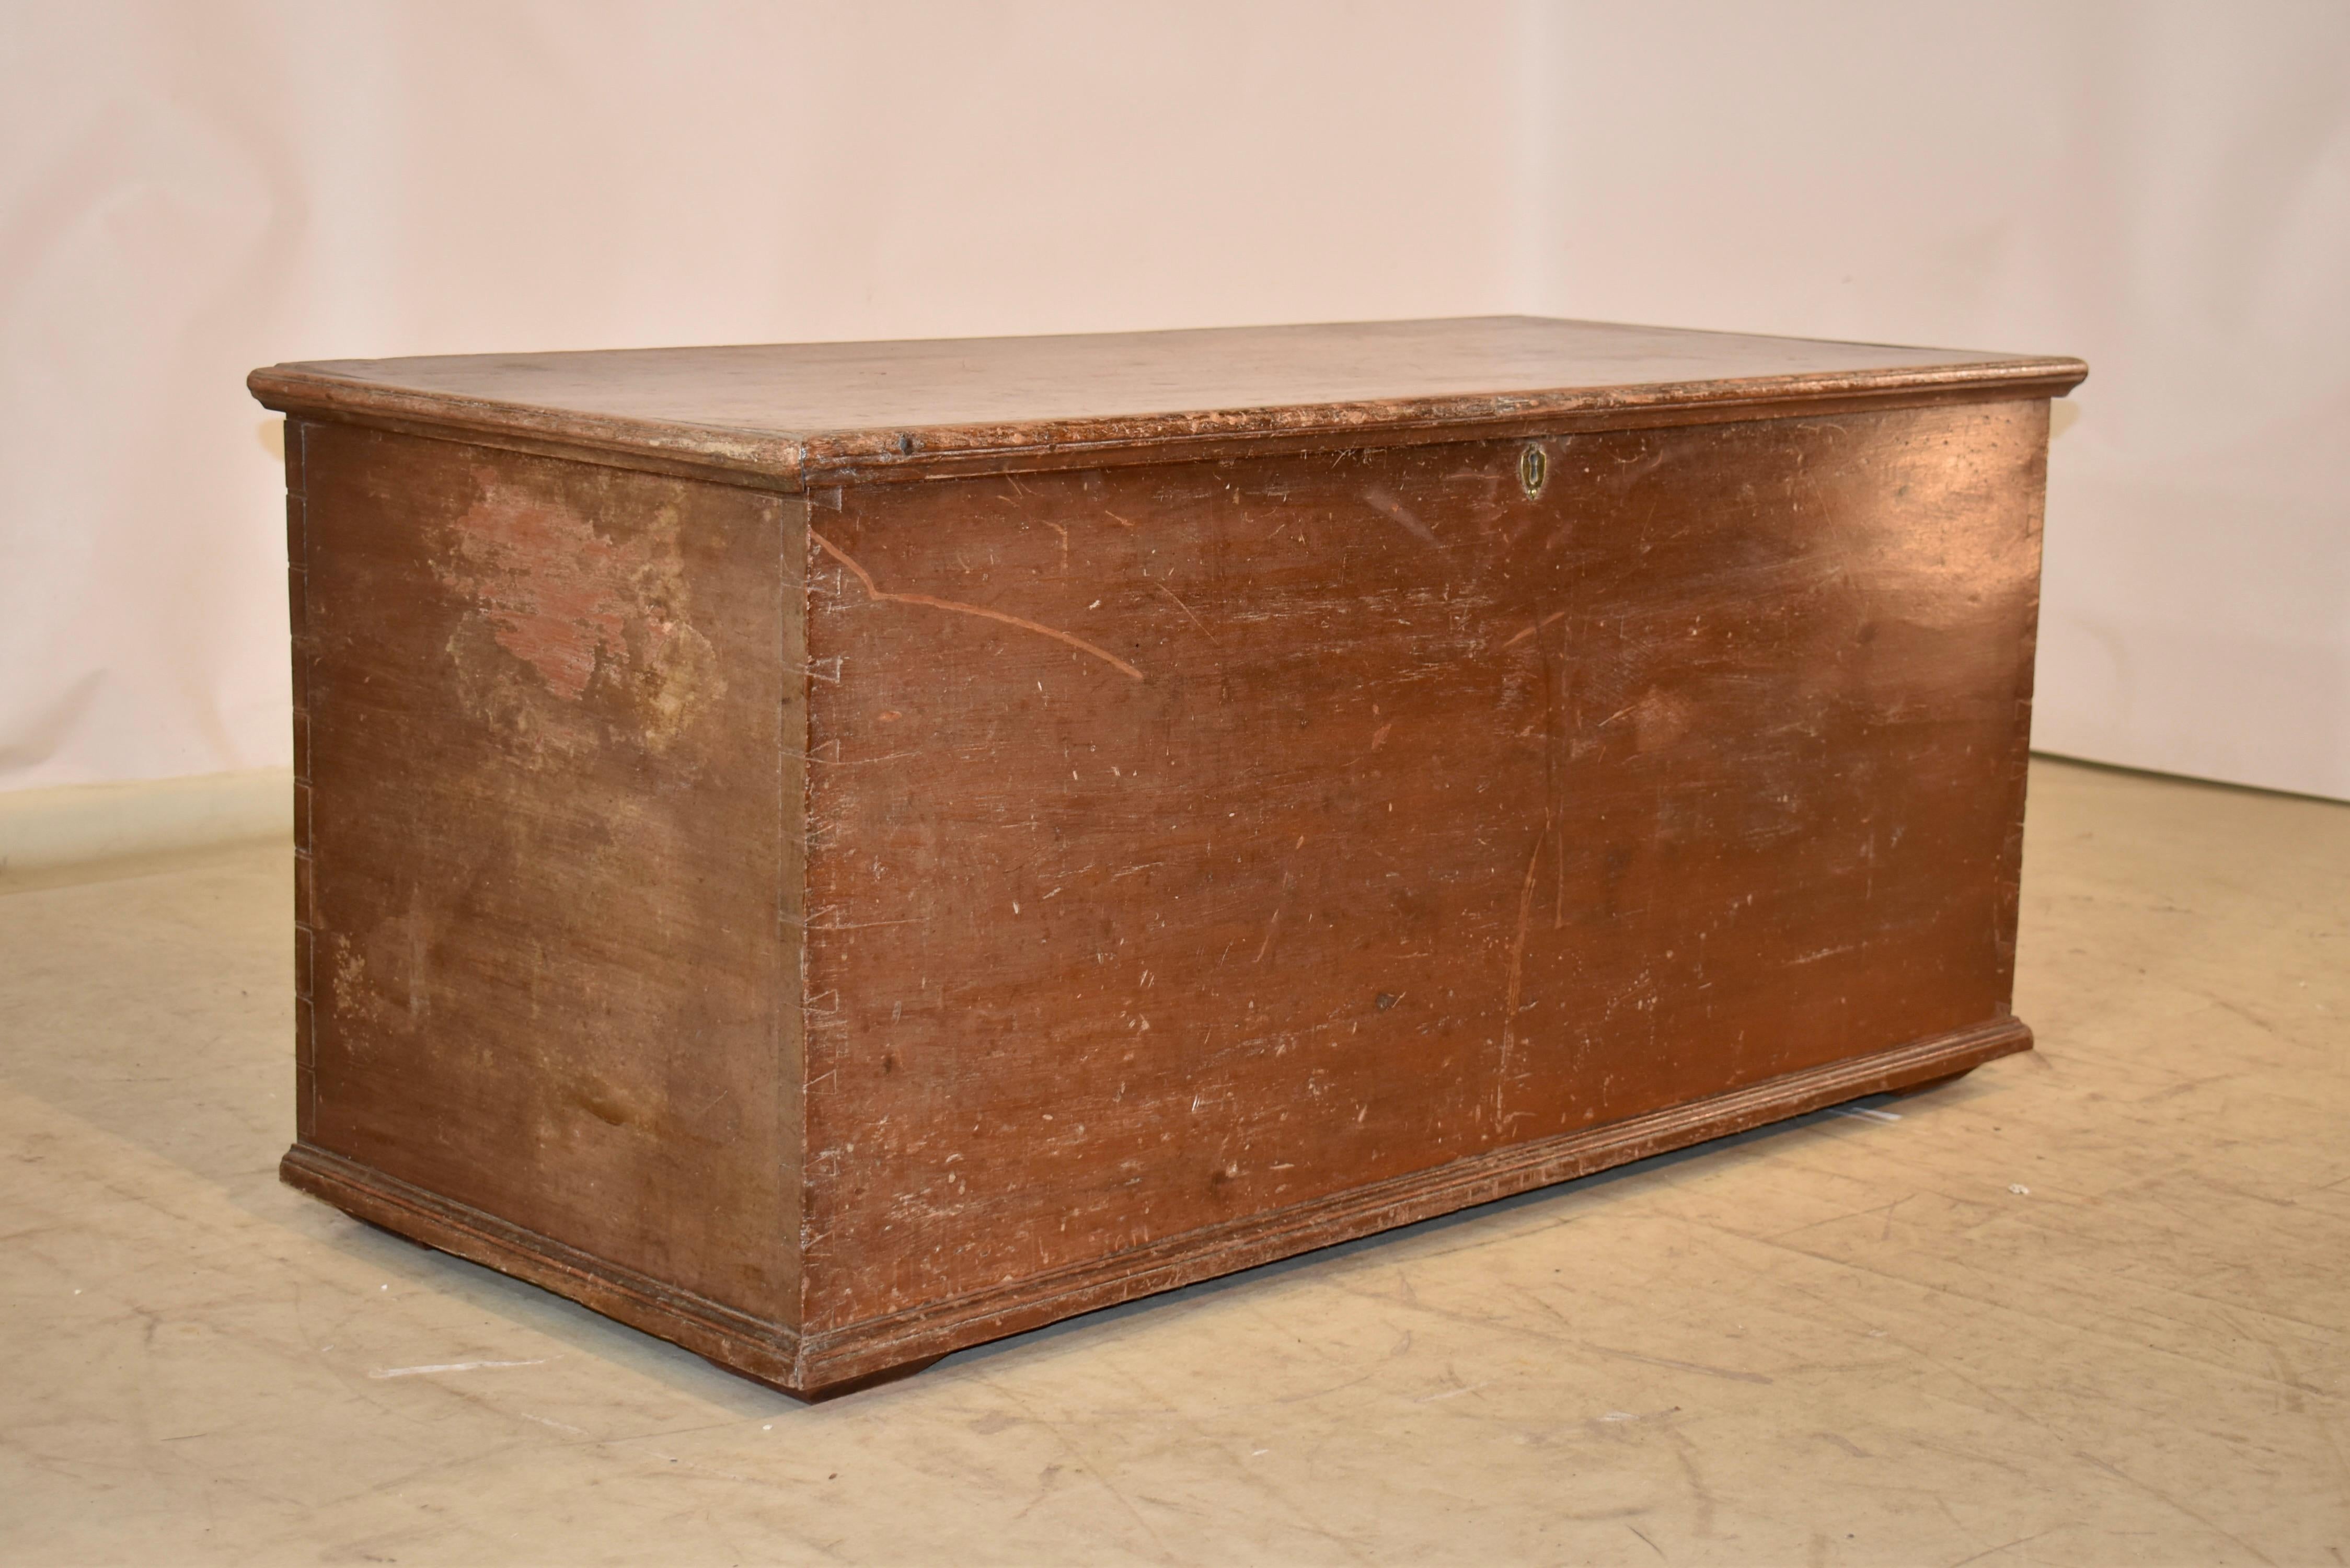 Coffre à couvertures en pin américain du début du 19e siècle, composé de six planches.  La couleur est un brun rougeâtre brique et est d'origine.  Les charnières semblent être d'origine et, une fois ouvertes, elles révèlent une boîte à bougies.  Il